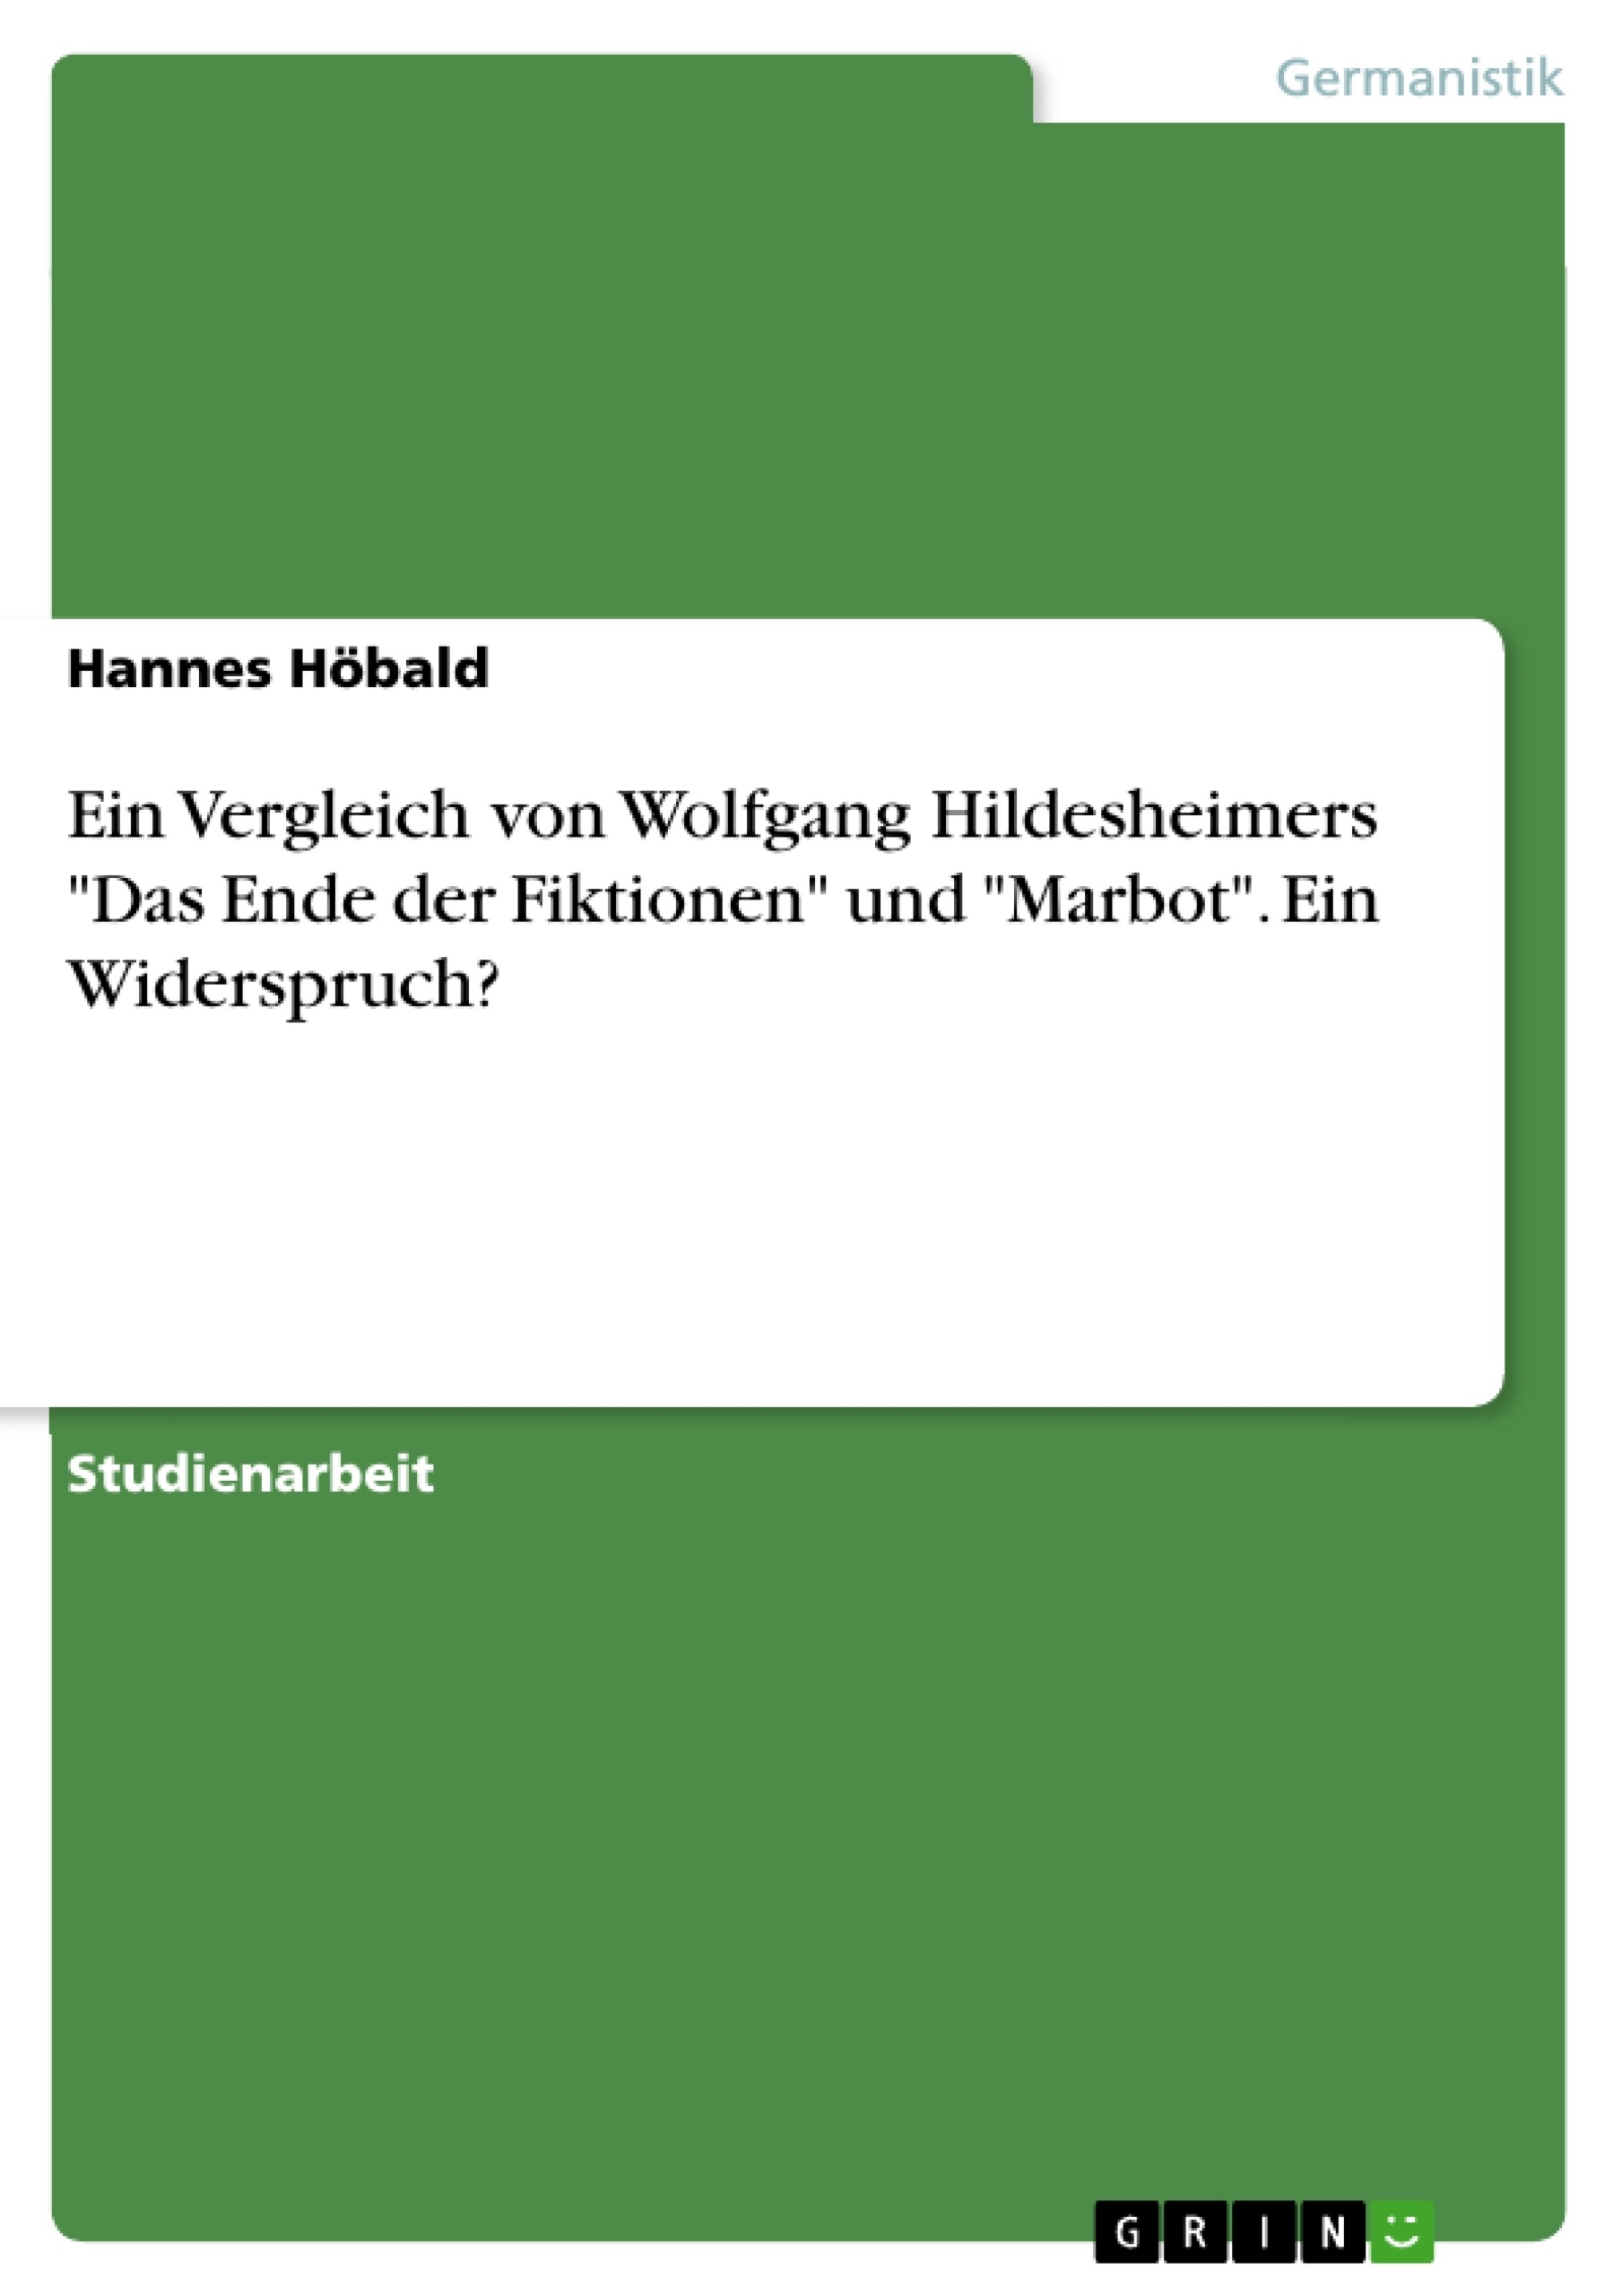 Titre: Ein Vergleich von Wolfgang Hildesheimers "Das Ende der Fiktionen" und "Marbot". Ein Widerspruch?